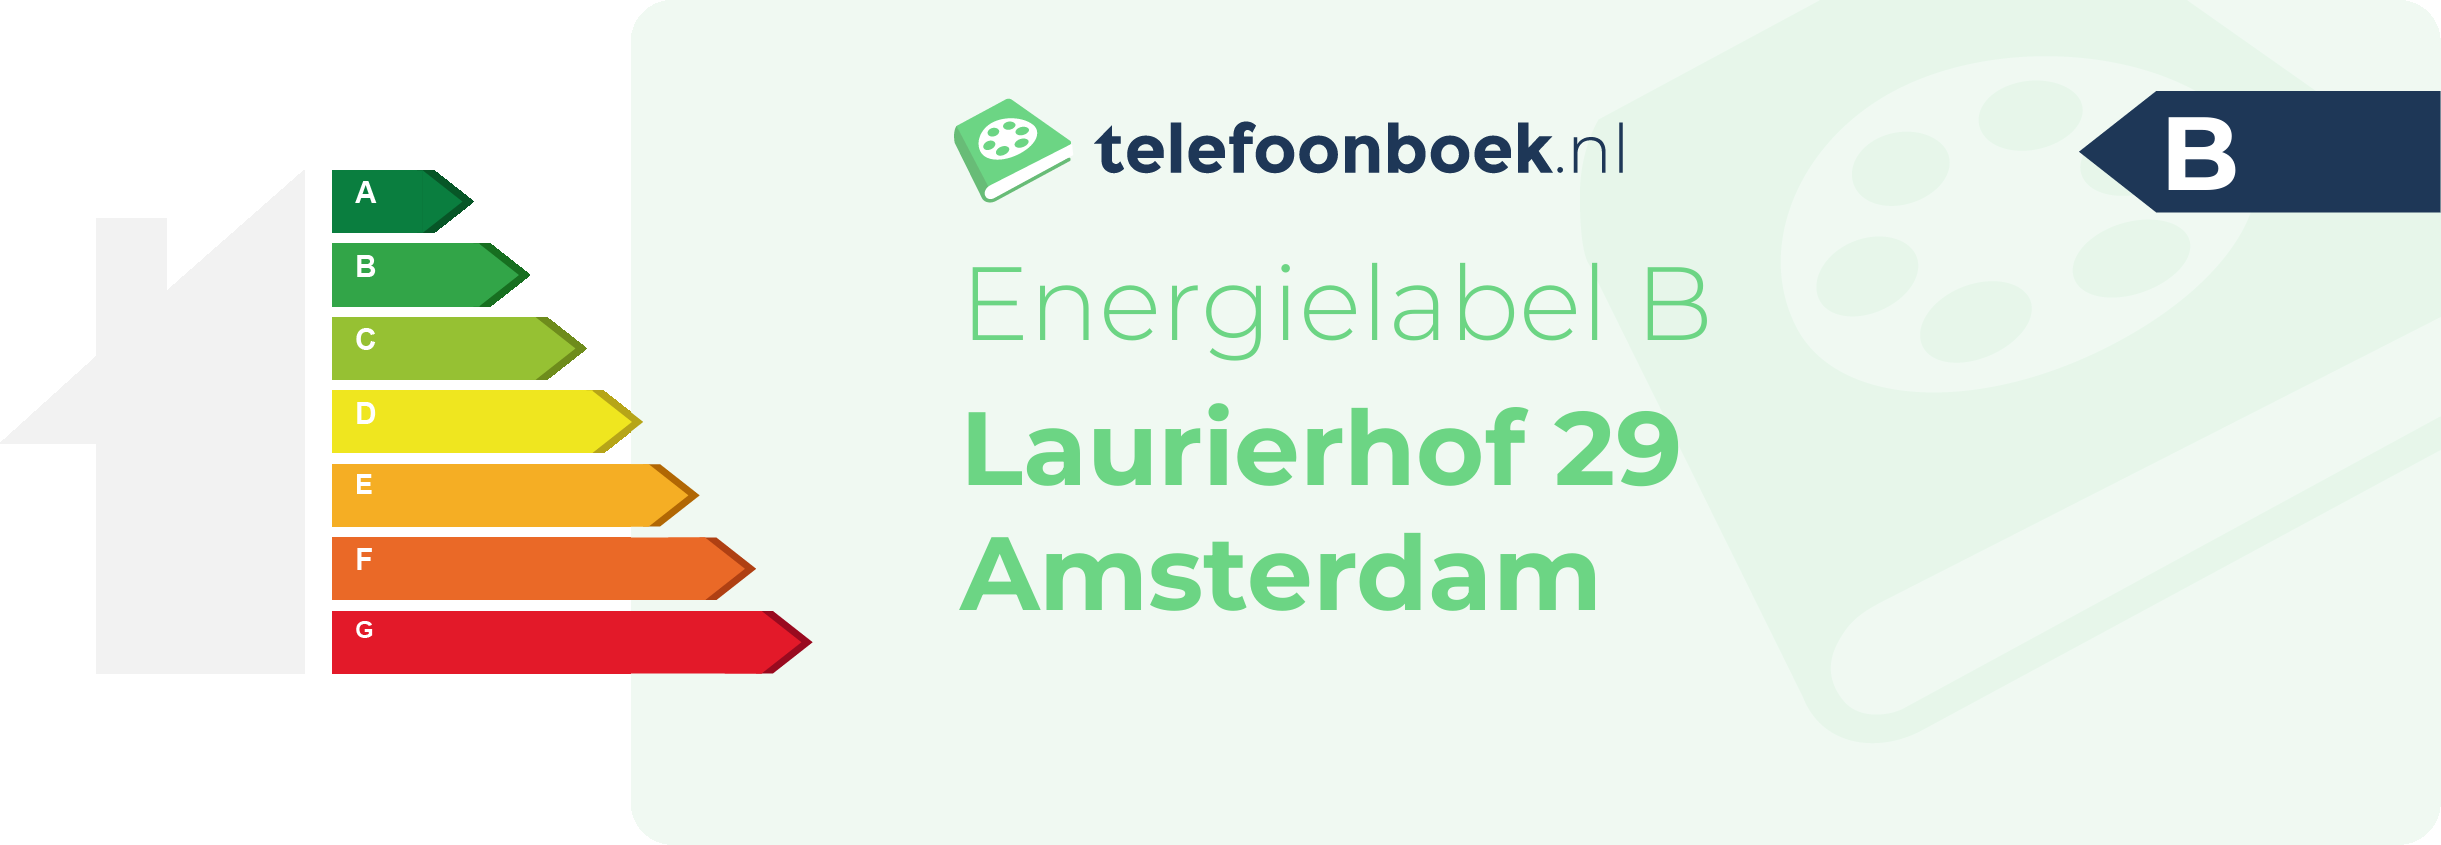 Energielabel Laurierhof 29 Amsterdam